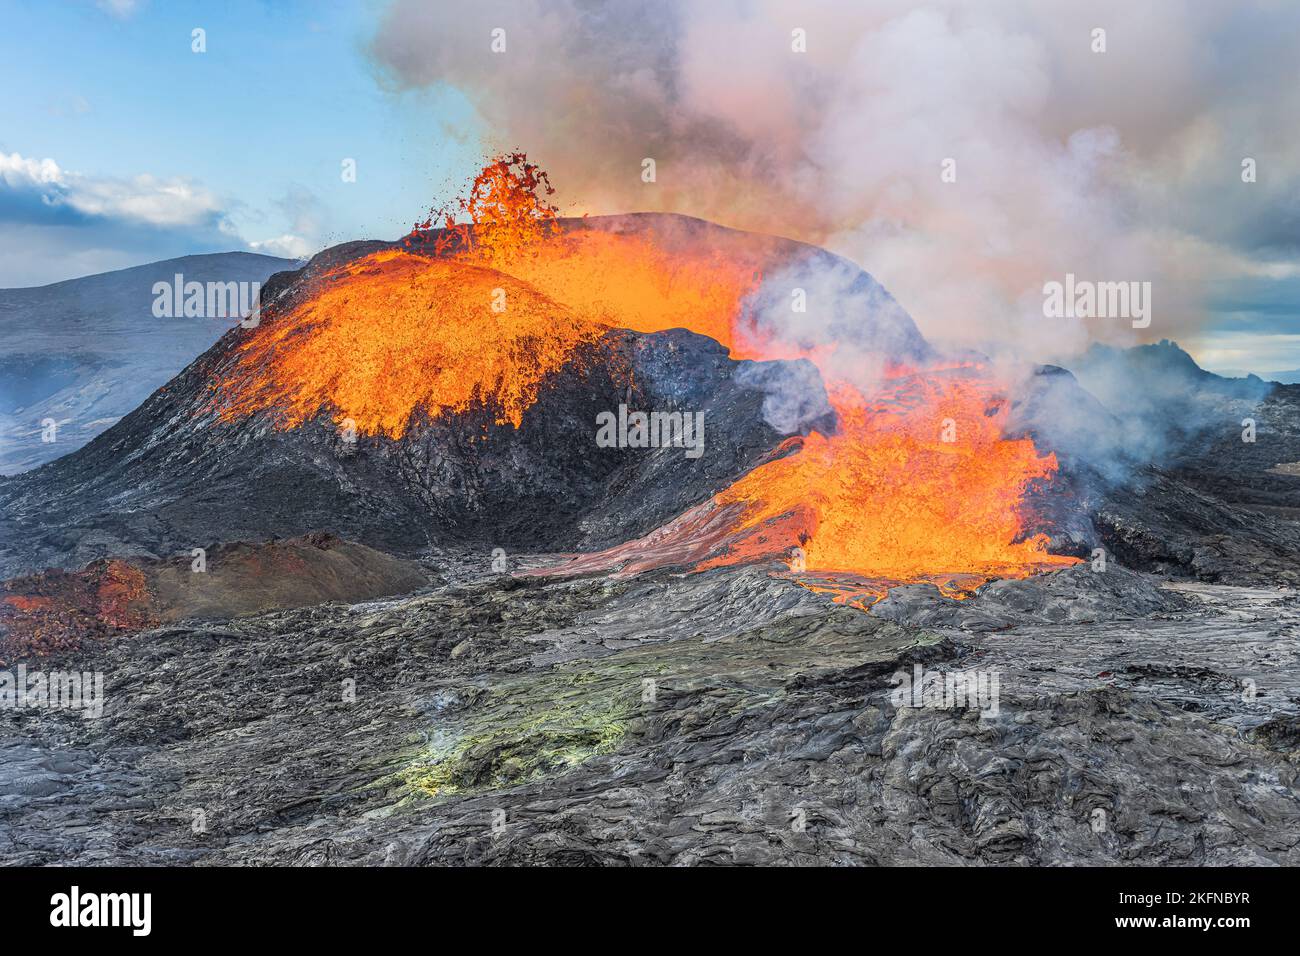 Fuerte flujo de lava de un volcán activo en la península de Rekjanes en Islandia. Cráter volcánico en el día con sol. Magma frío alrededor de cráteres. Foto de stock